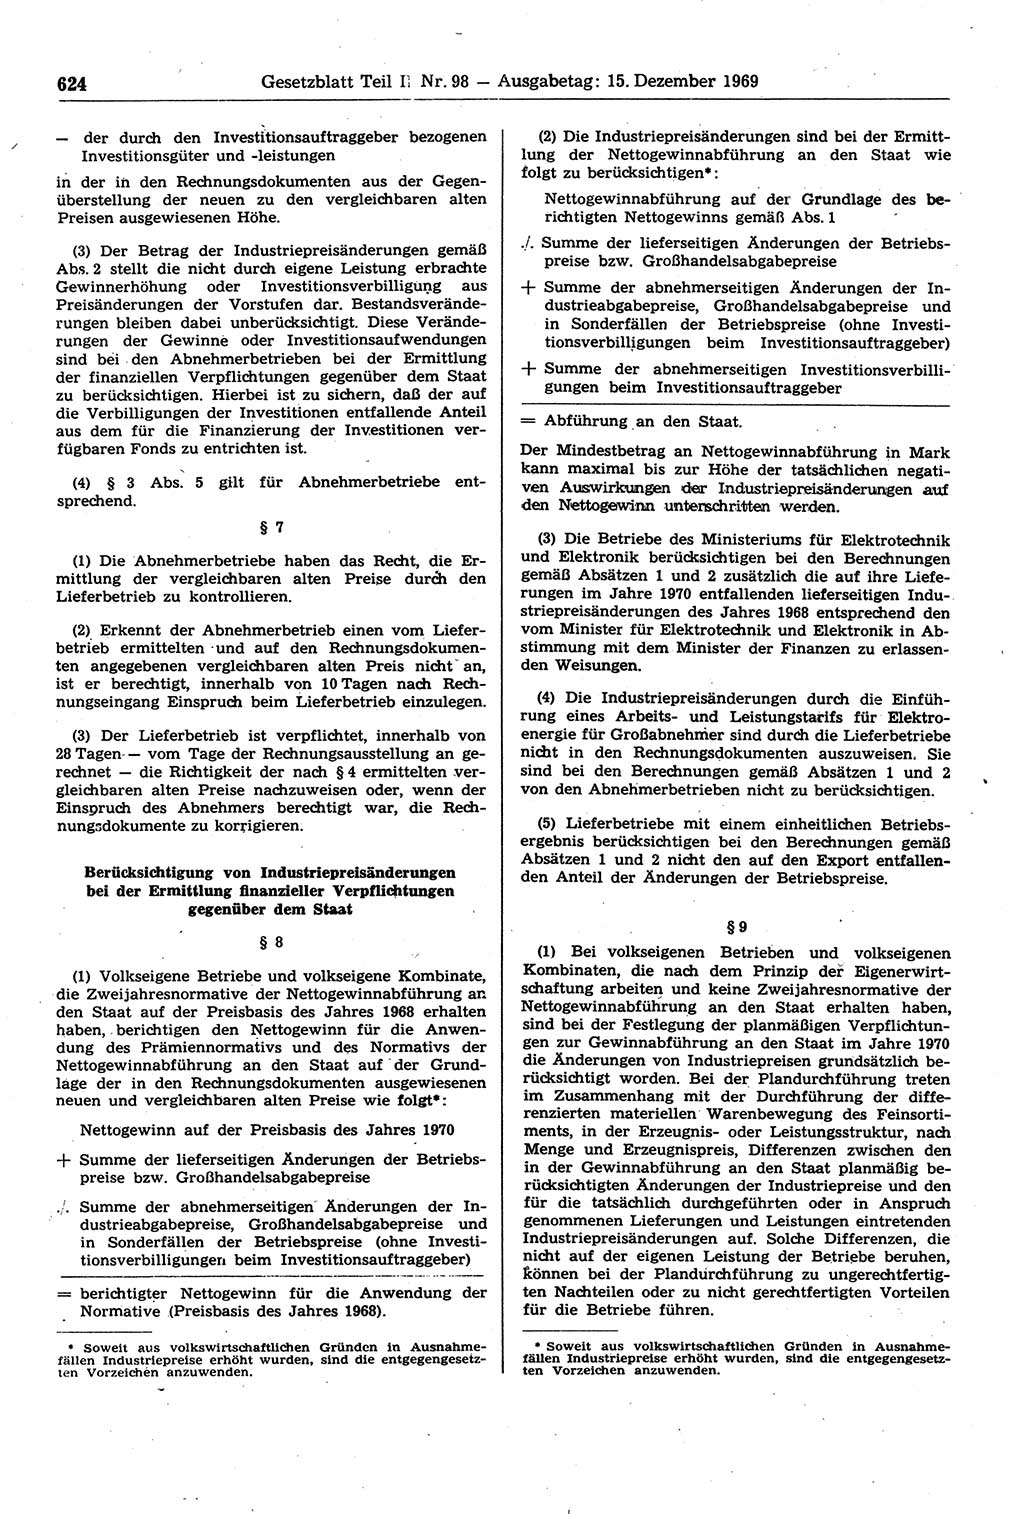 Gesetzblatt (GBl.) der Deutschen Demokratischen Republik (DDR) Teil ⅠⅠ 1969, Seite 624 (GBl. DDR ⅠⅠ 1969, S. 624)